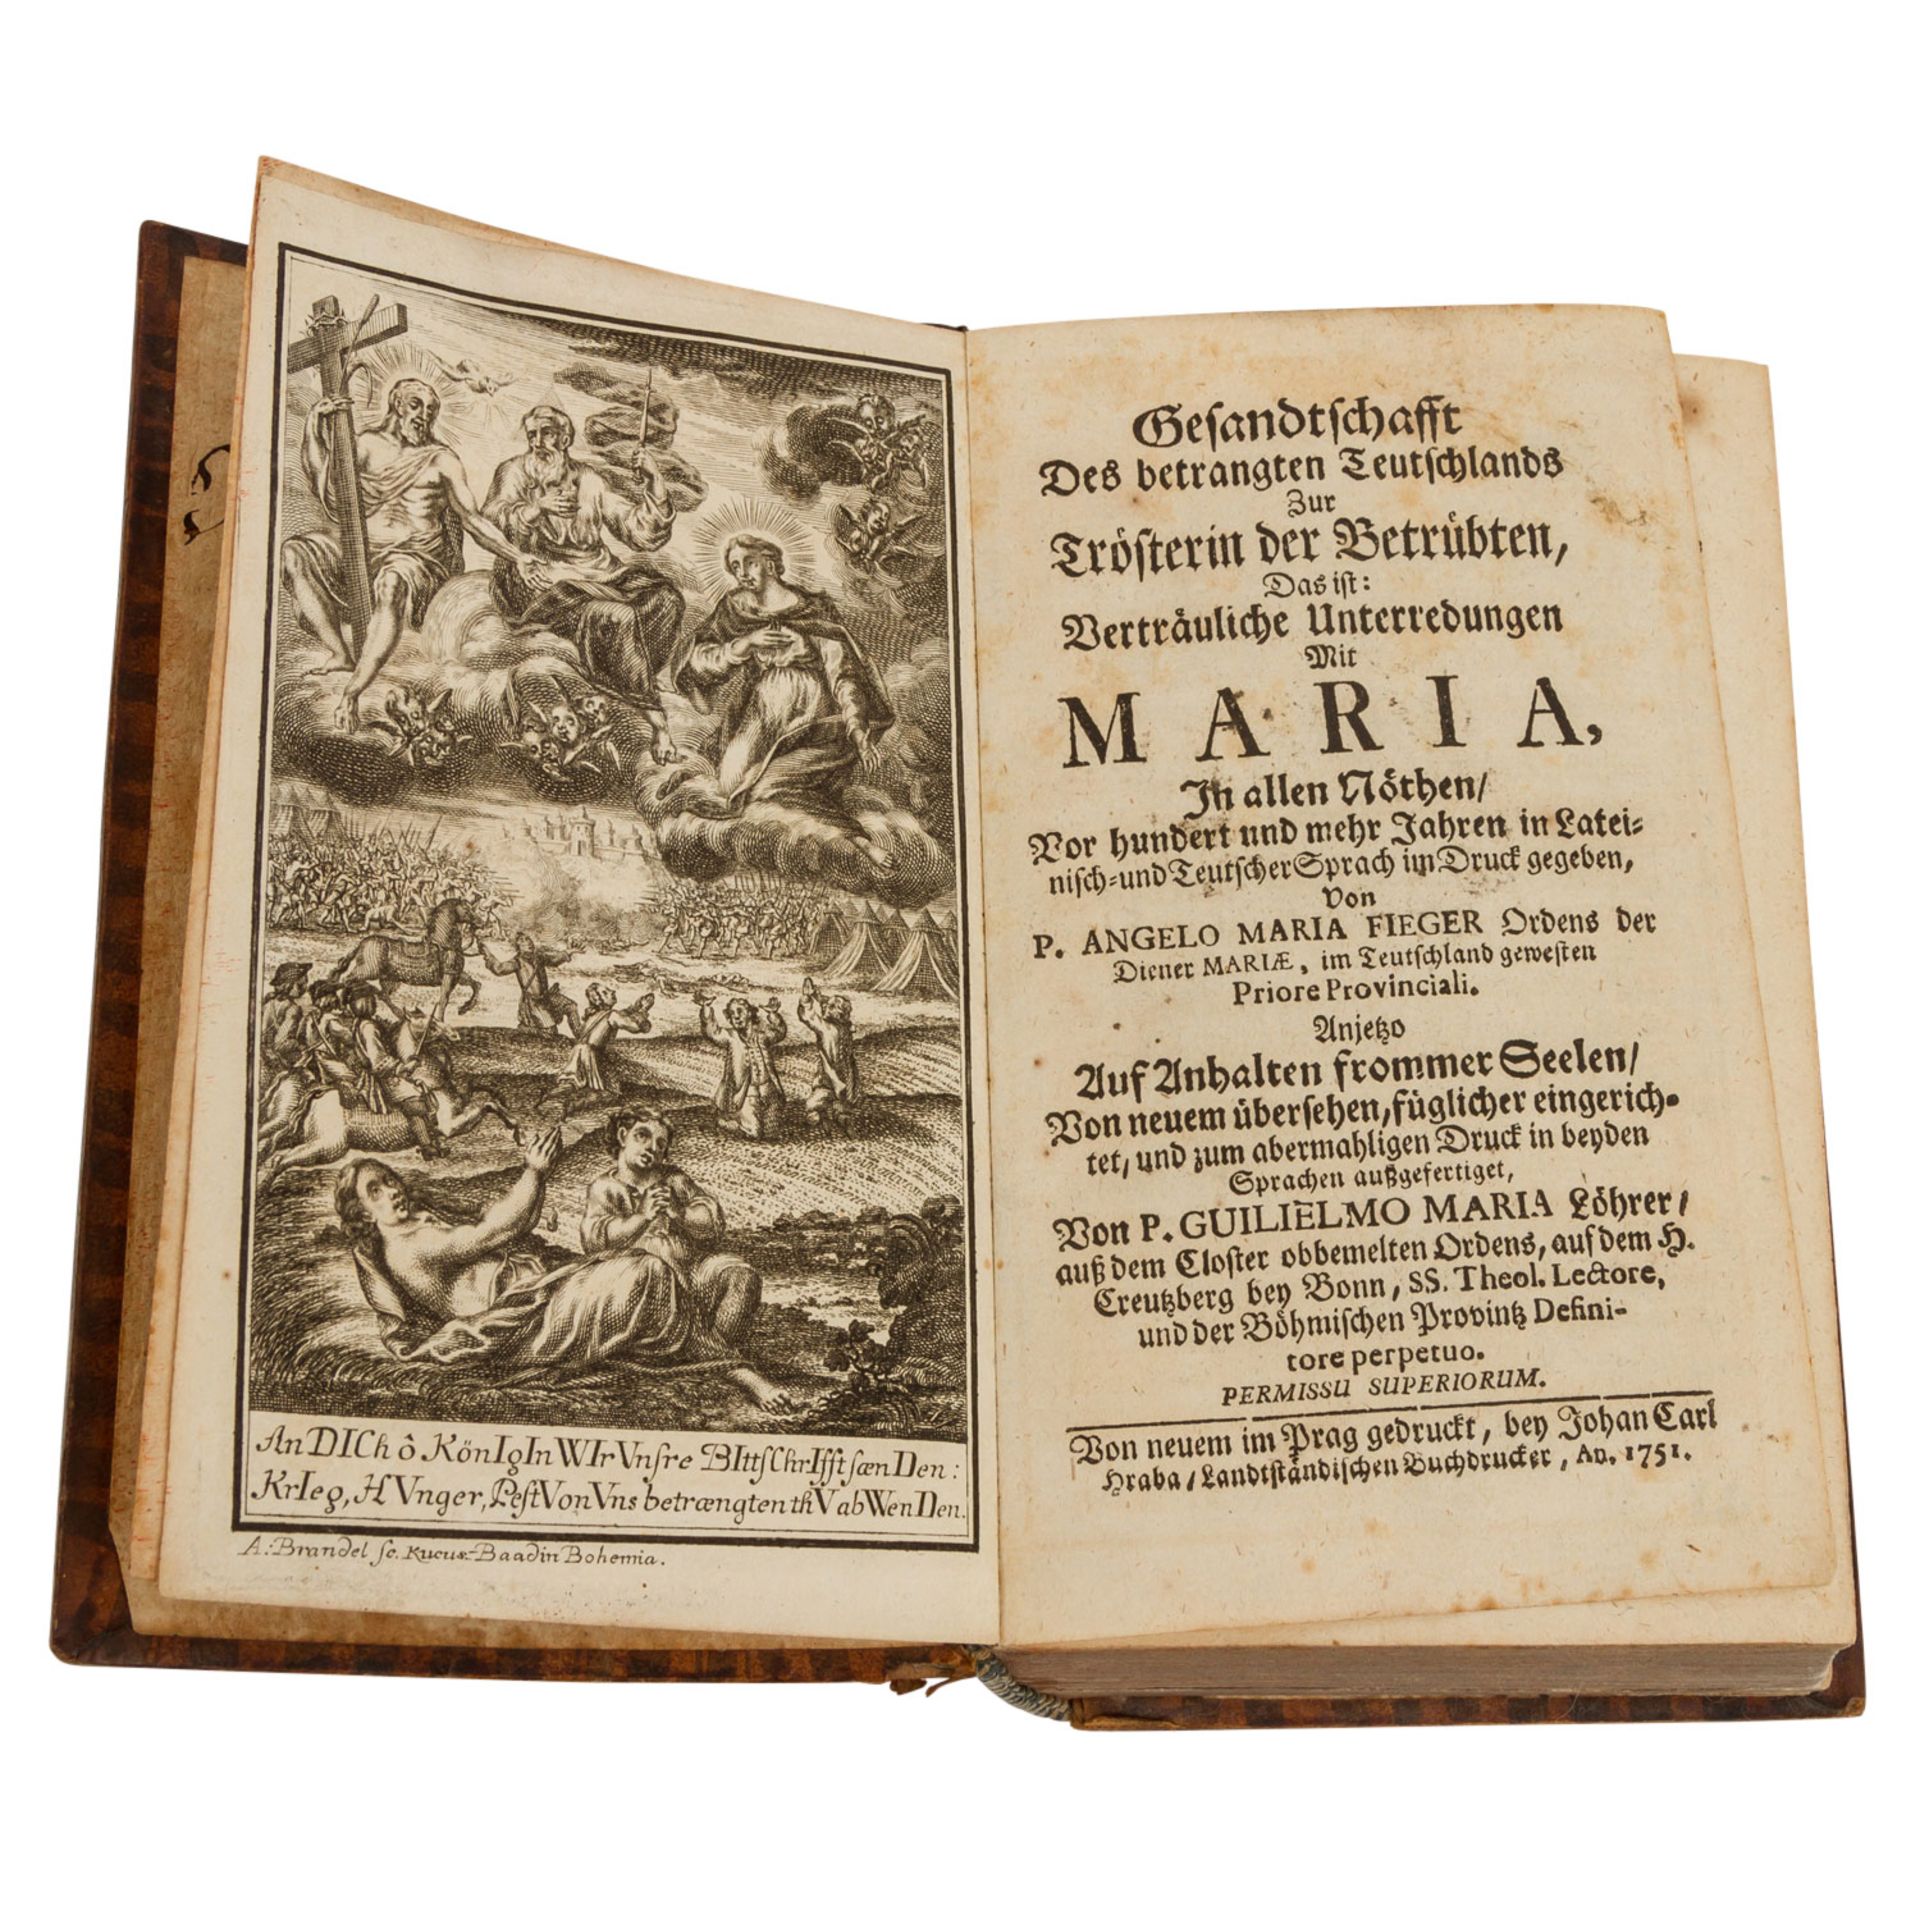 VIER RELIGIÖSE WERKE CAMILLO ETTORI "Heilige Einöde..."1728, Verlag: Clementin. Buch - Image 4 of 4